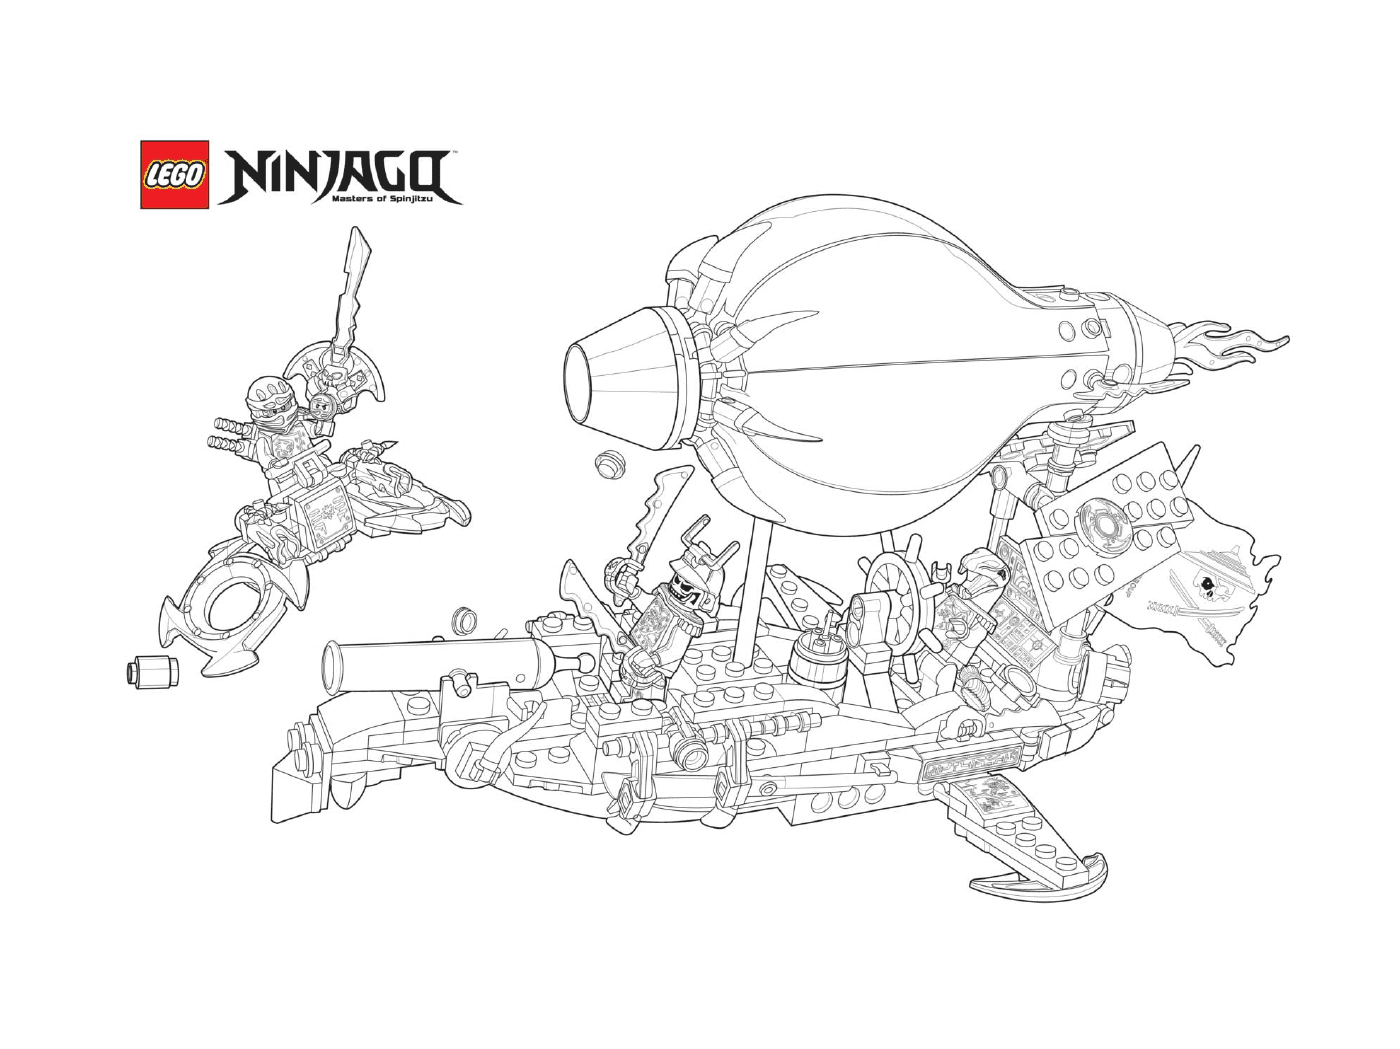  Ninjago vs. enemies by boat 